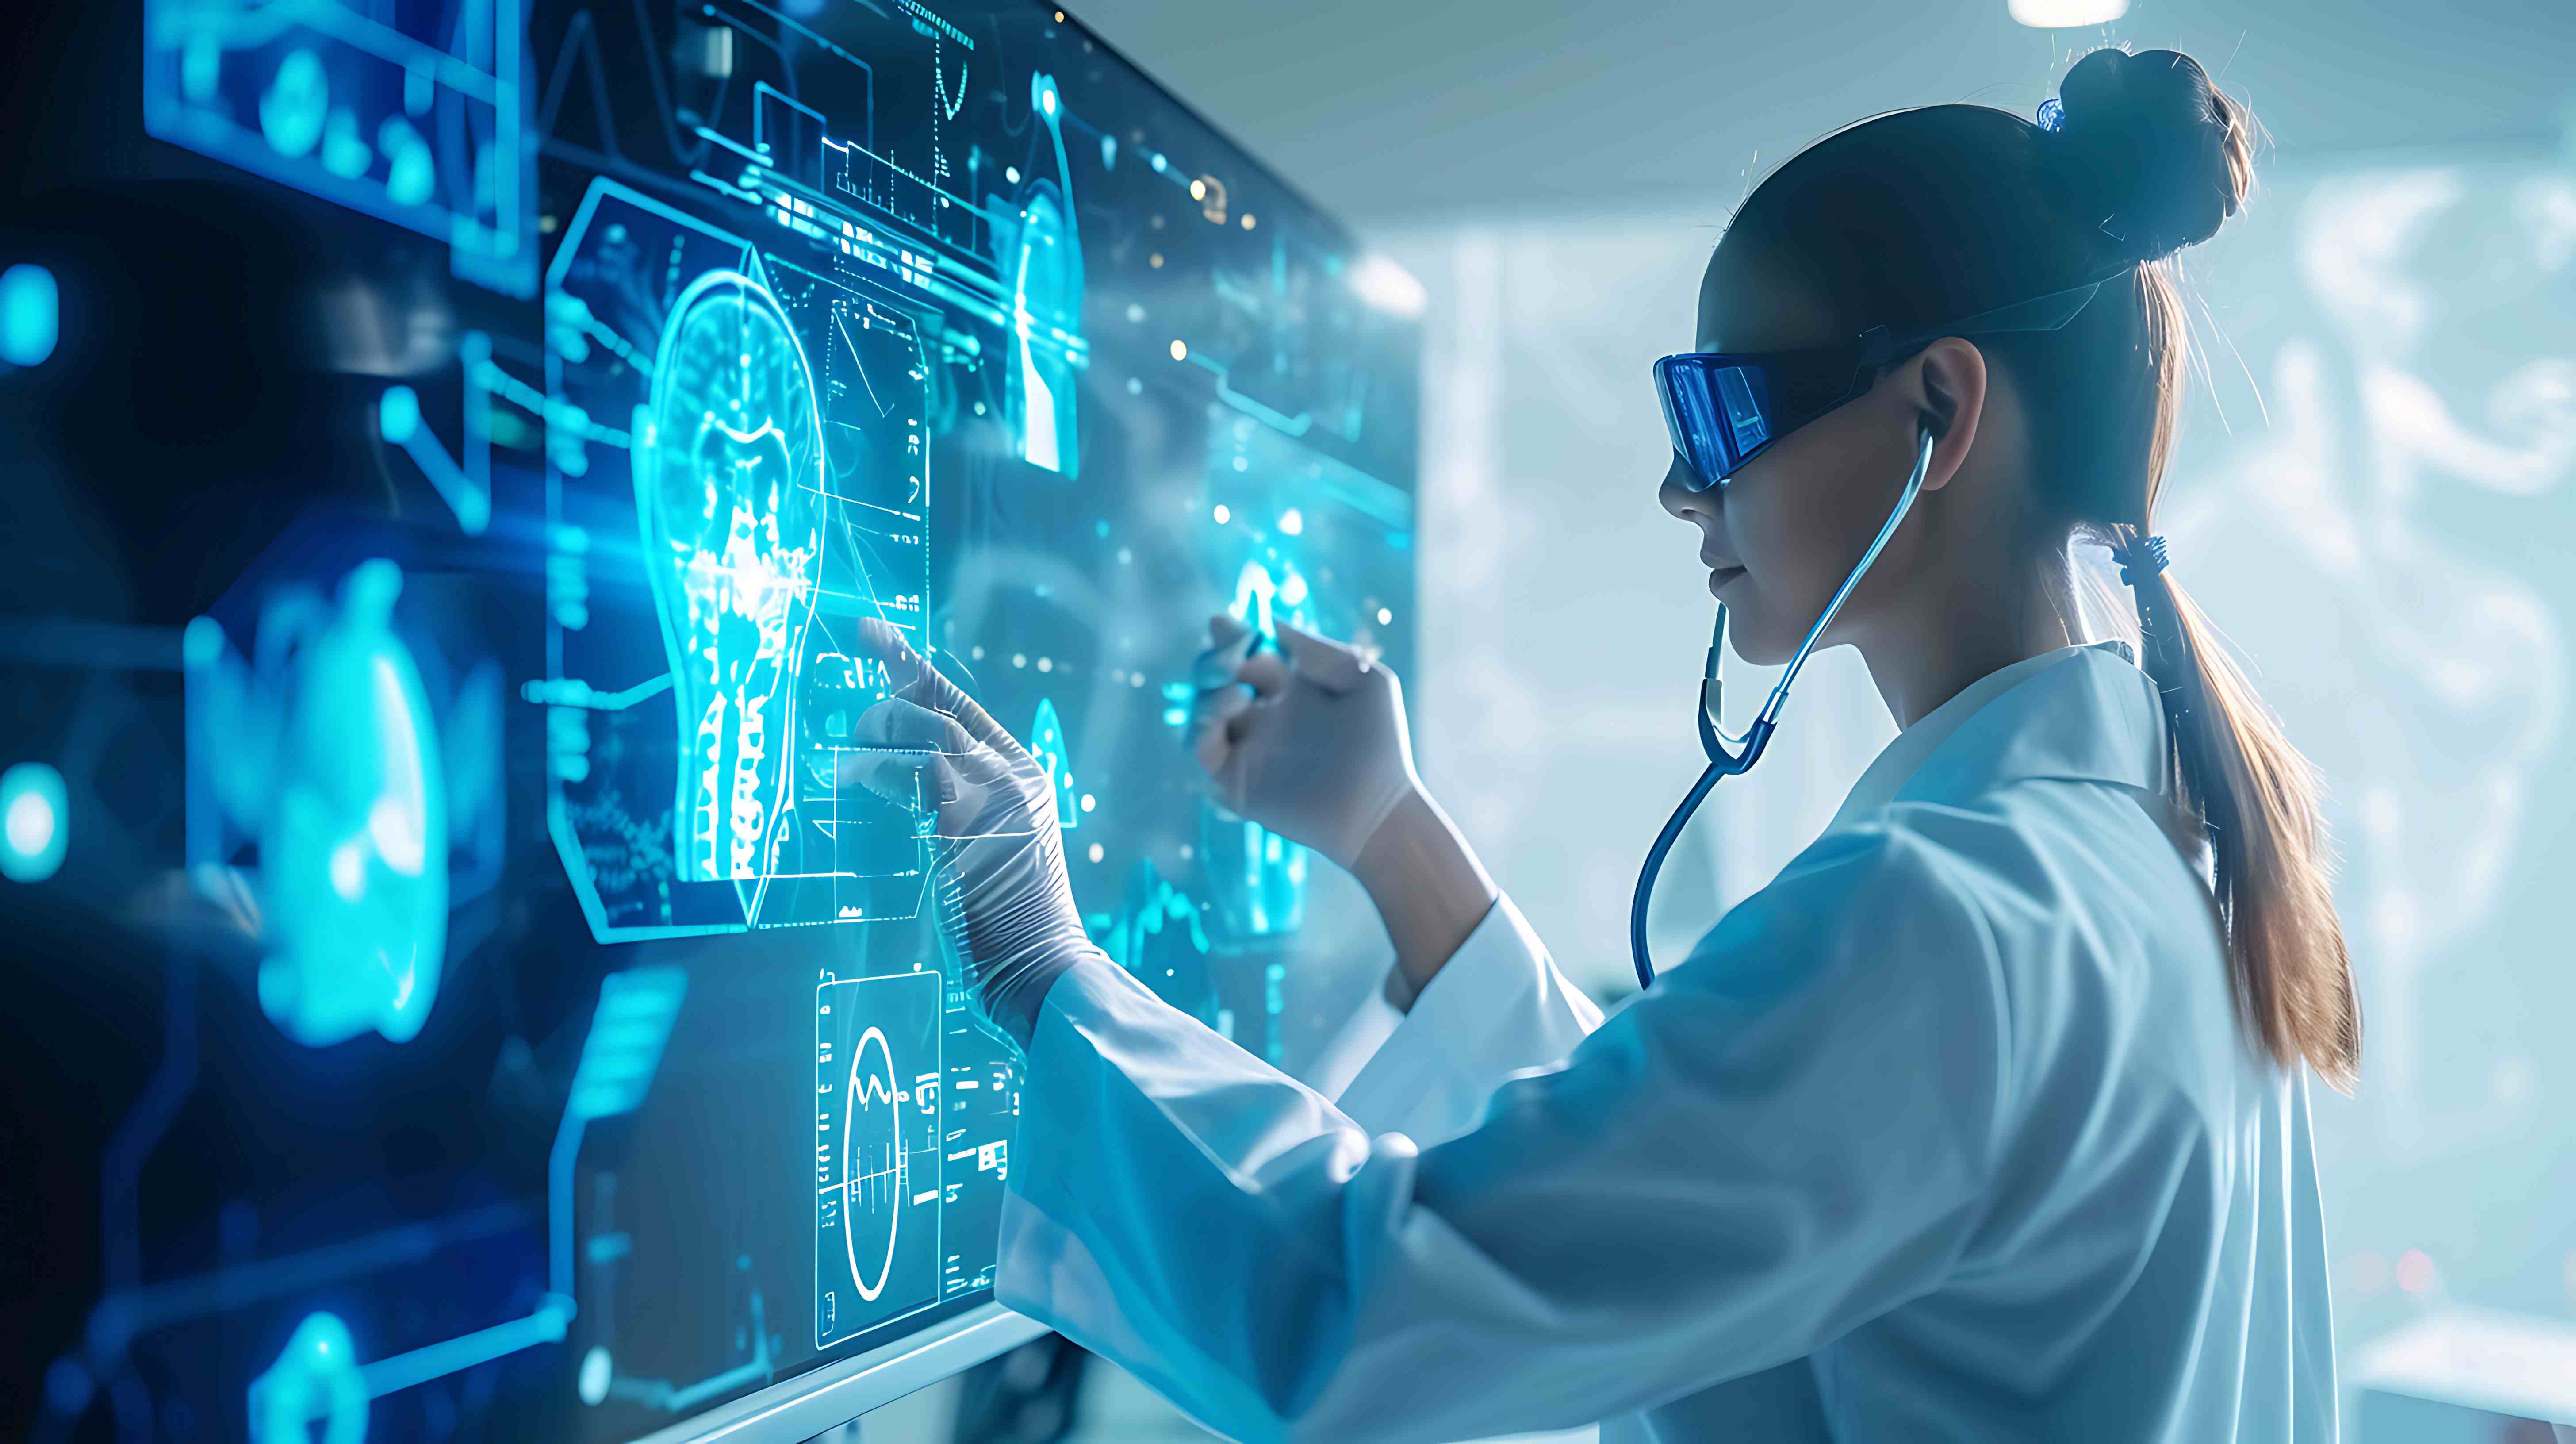 La réalité virtuelle et la réalité augmentée vont révolutionner la médecine. © Jameel, Adobe Stock